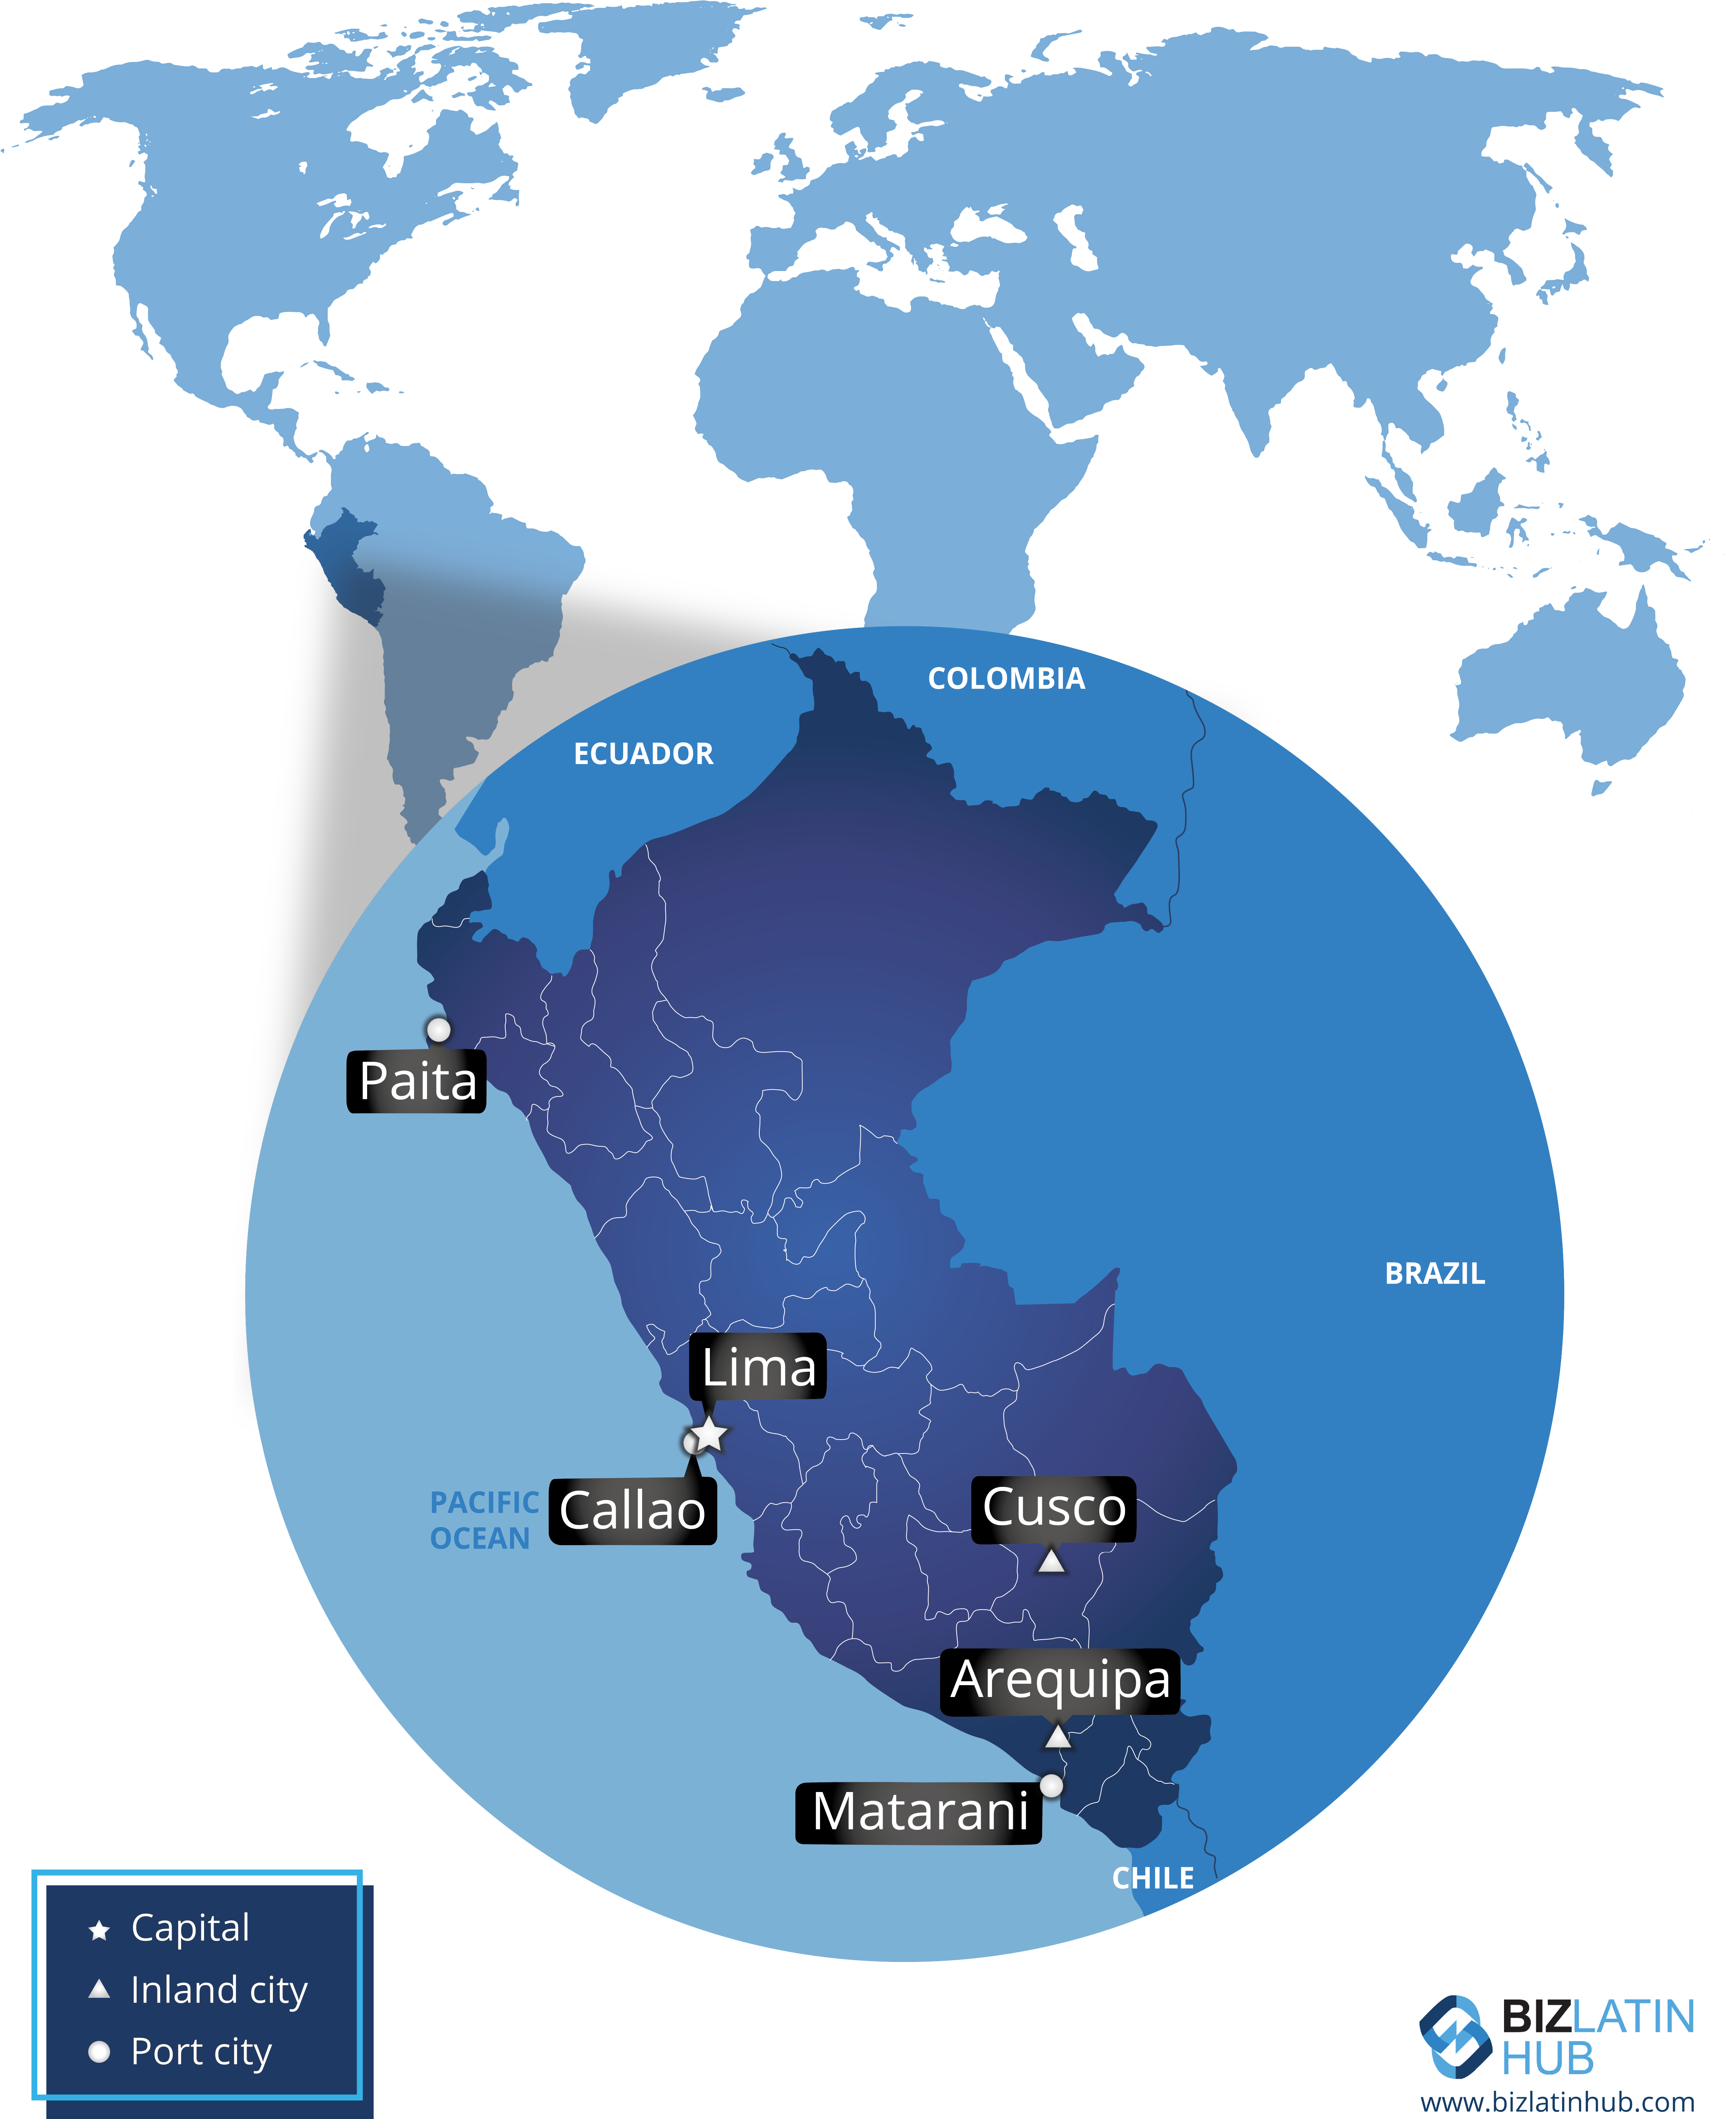 Mapa de Perú y sus principales ciudades, por Biz Latin Hub. Es posible que desee realizar el registro del producto en Perú.